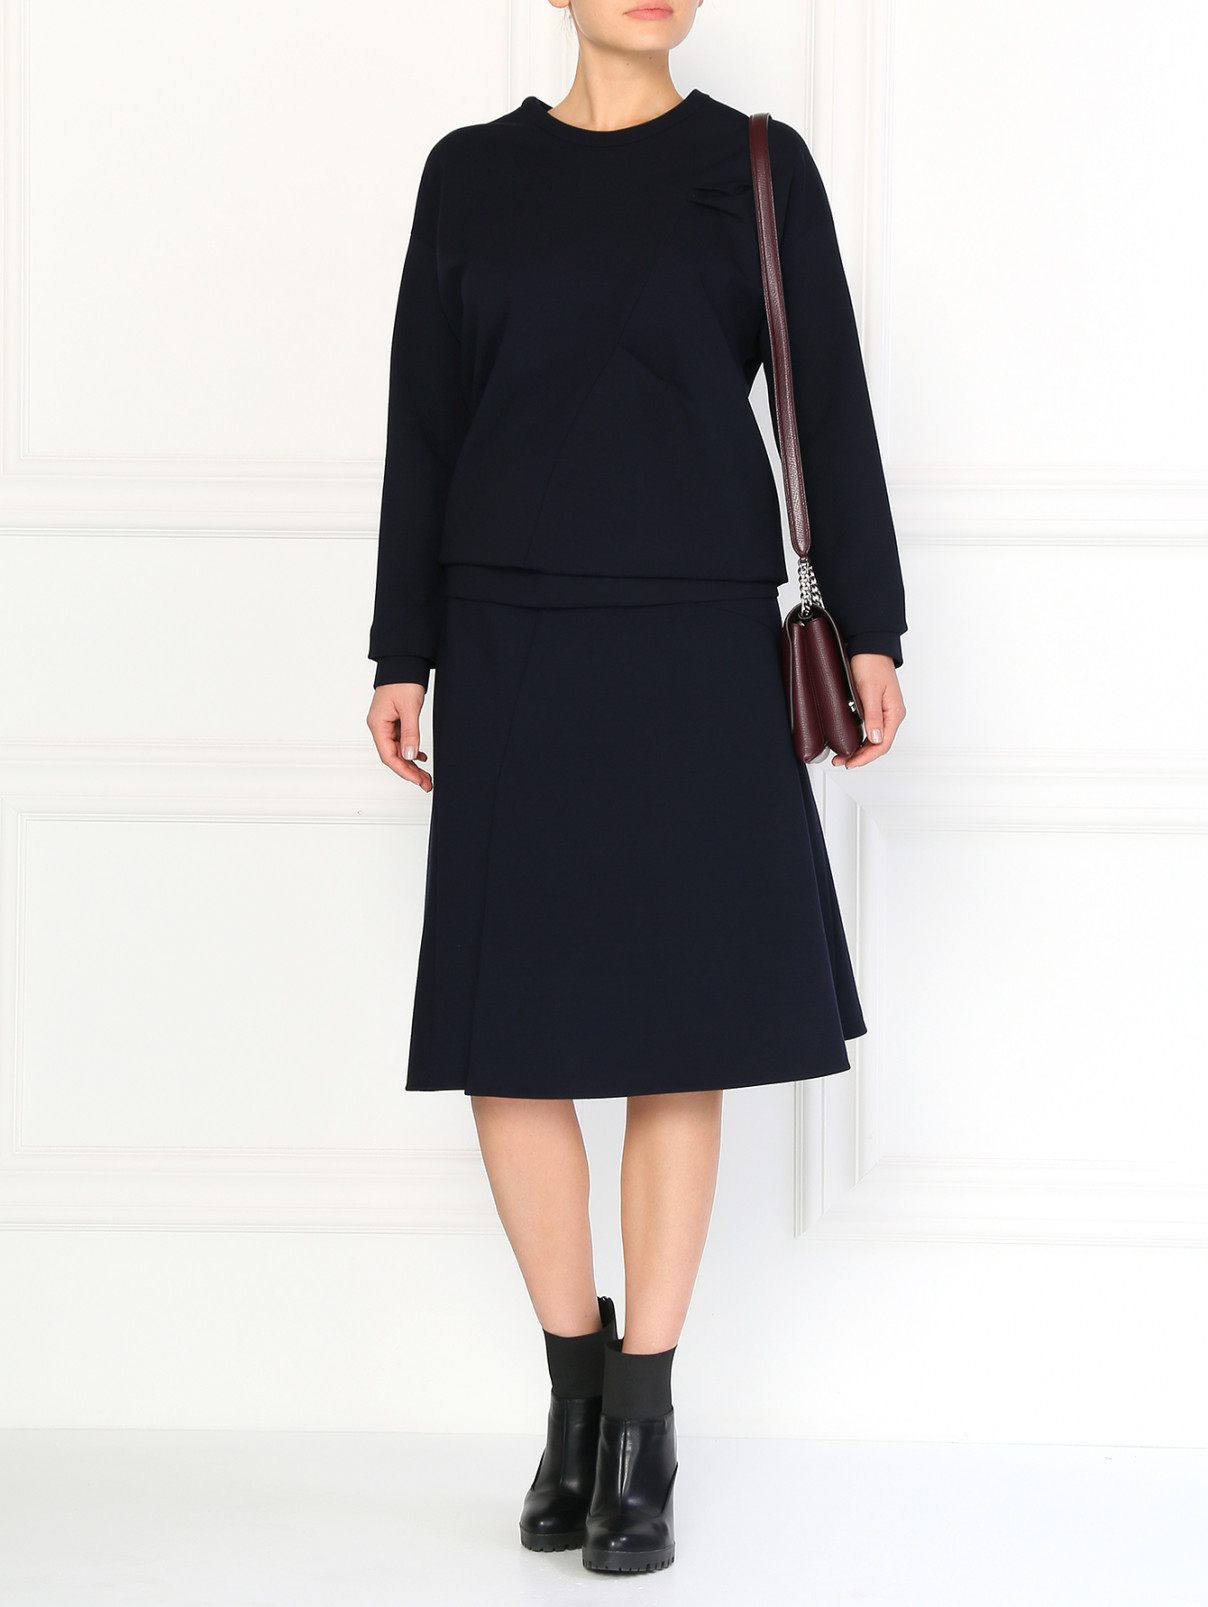 Шерстяная юбка-полусолнце с запахом Jil Sander  –  Модель Общий вид  – Цвет:  Синий